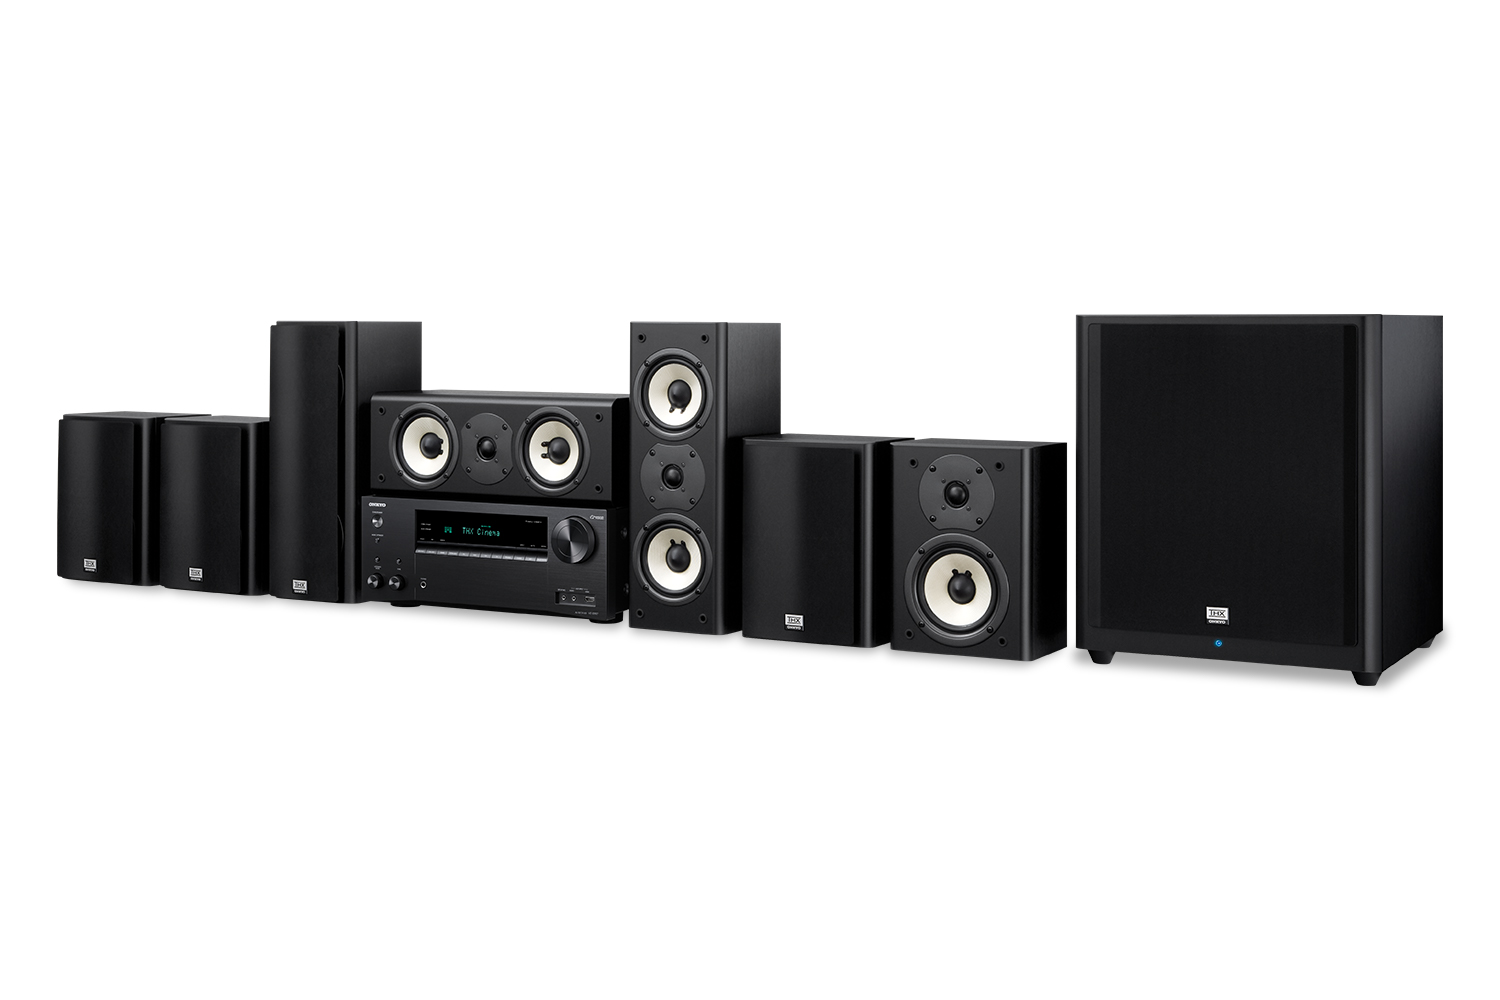 Onkyo THX Certified 7.1-Channel Surround Sound Speaker System